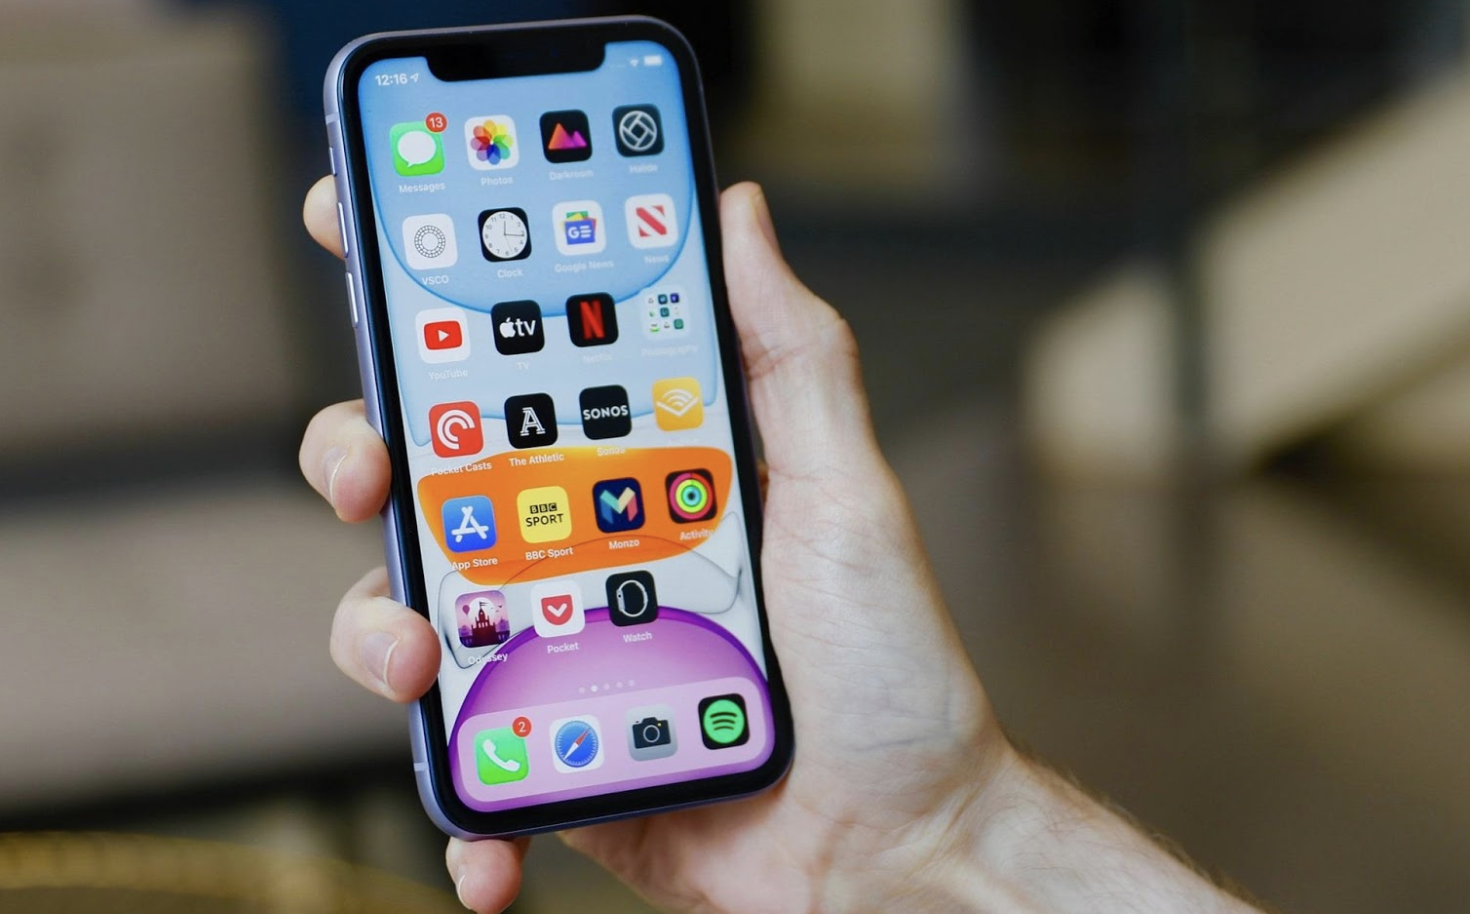 iPhone 11 là chiếc smartphone tuyệt vời nhưng màn hình sọc có thể làm khó chịu. Với sửa lỗi từ chuyên gia, chắc chắn bạn sẽ có một màn hình hoàn hảo như mới. Nhấn vào ảnh để biết thêm chi tiết.